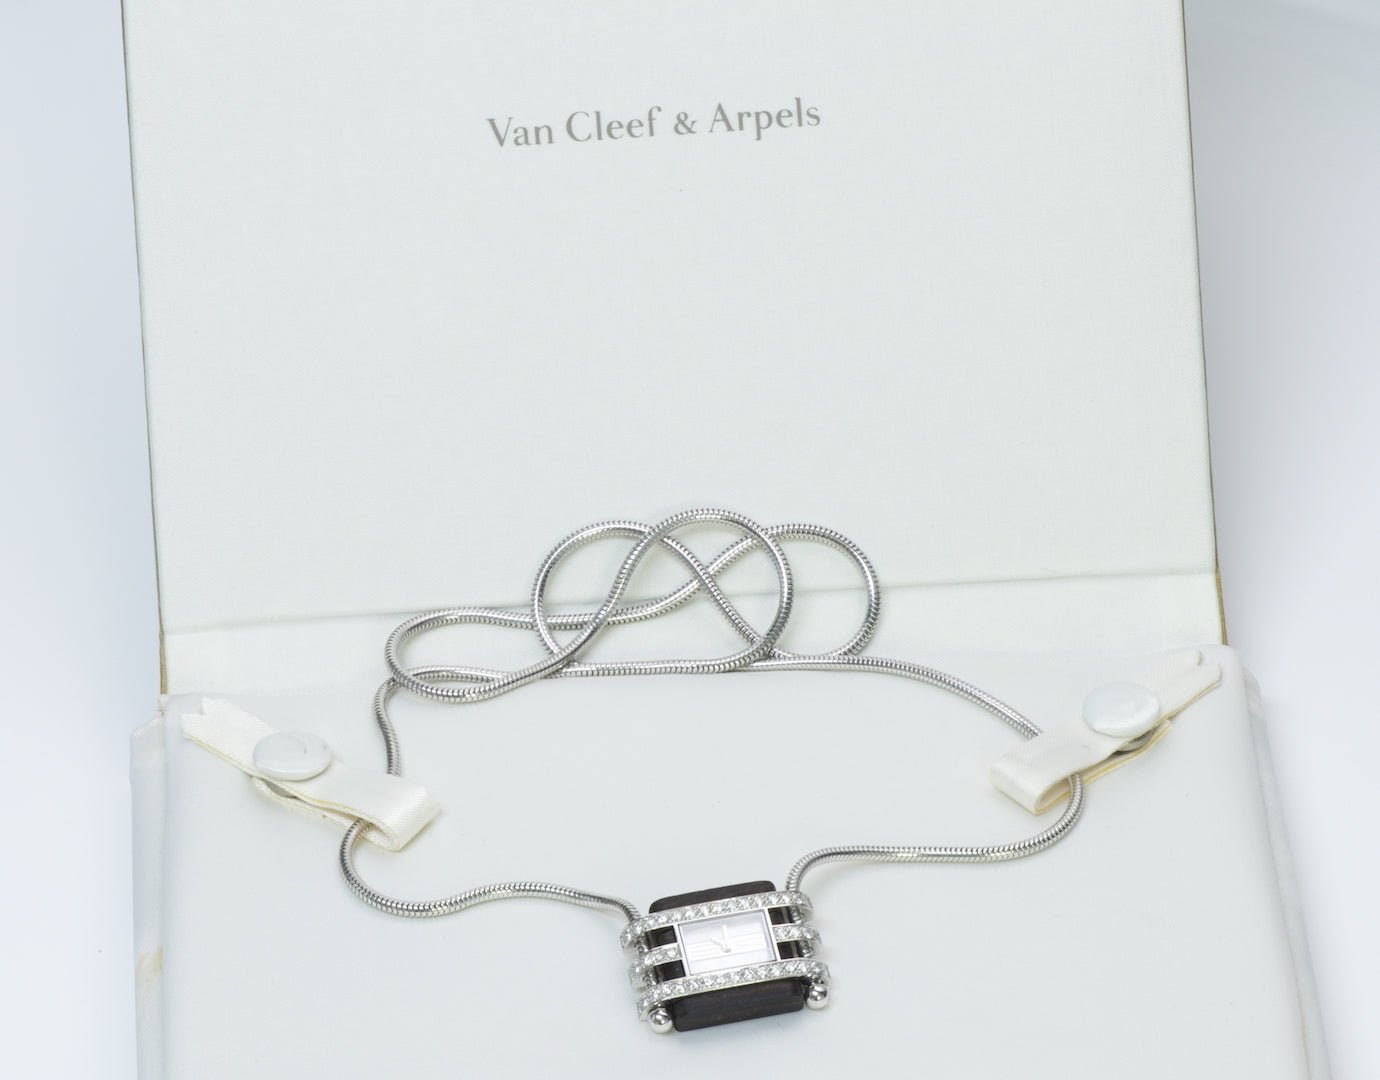 Van Cleef & Arpels Pendant Watch Necklace